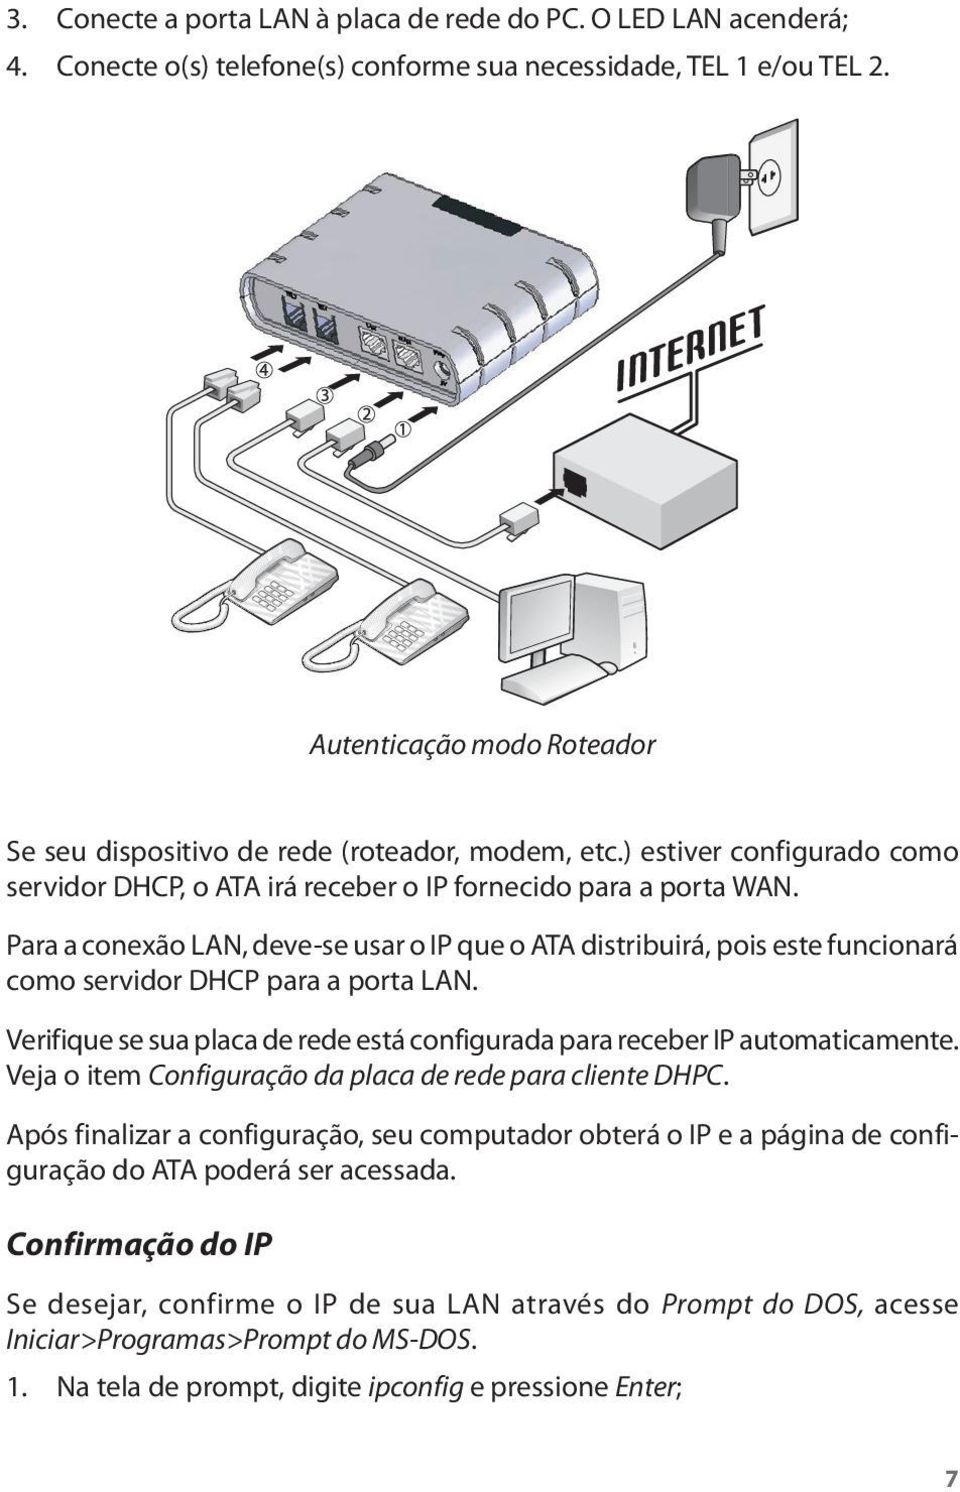 Para a conexão LAN, deve-se usar o IP que o ATA distribuirá, pois este funcionará como servidor DHCP para a porta LAN. Verifique se sua placa de rede está configurada para receber IP automaticamente.